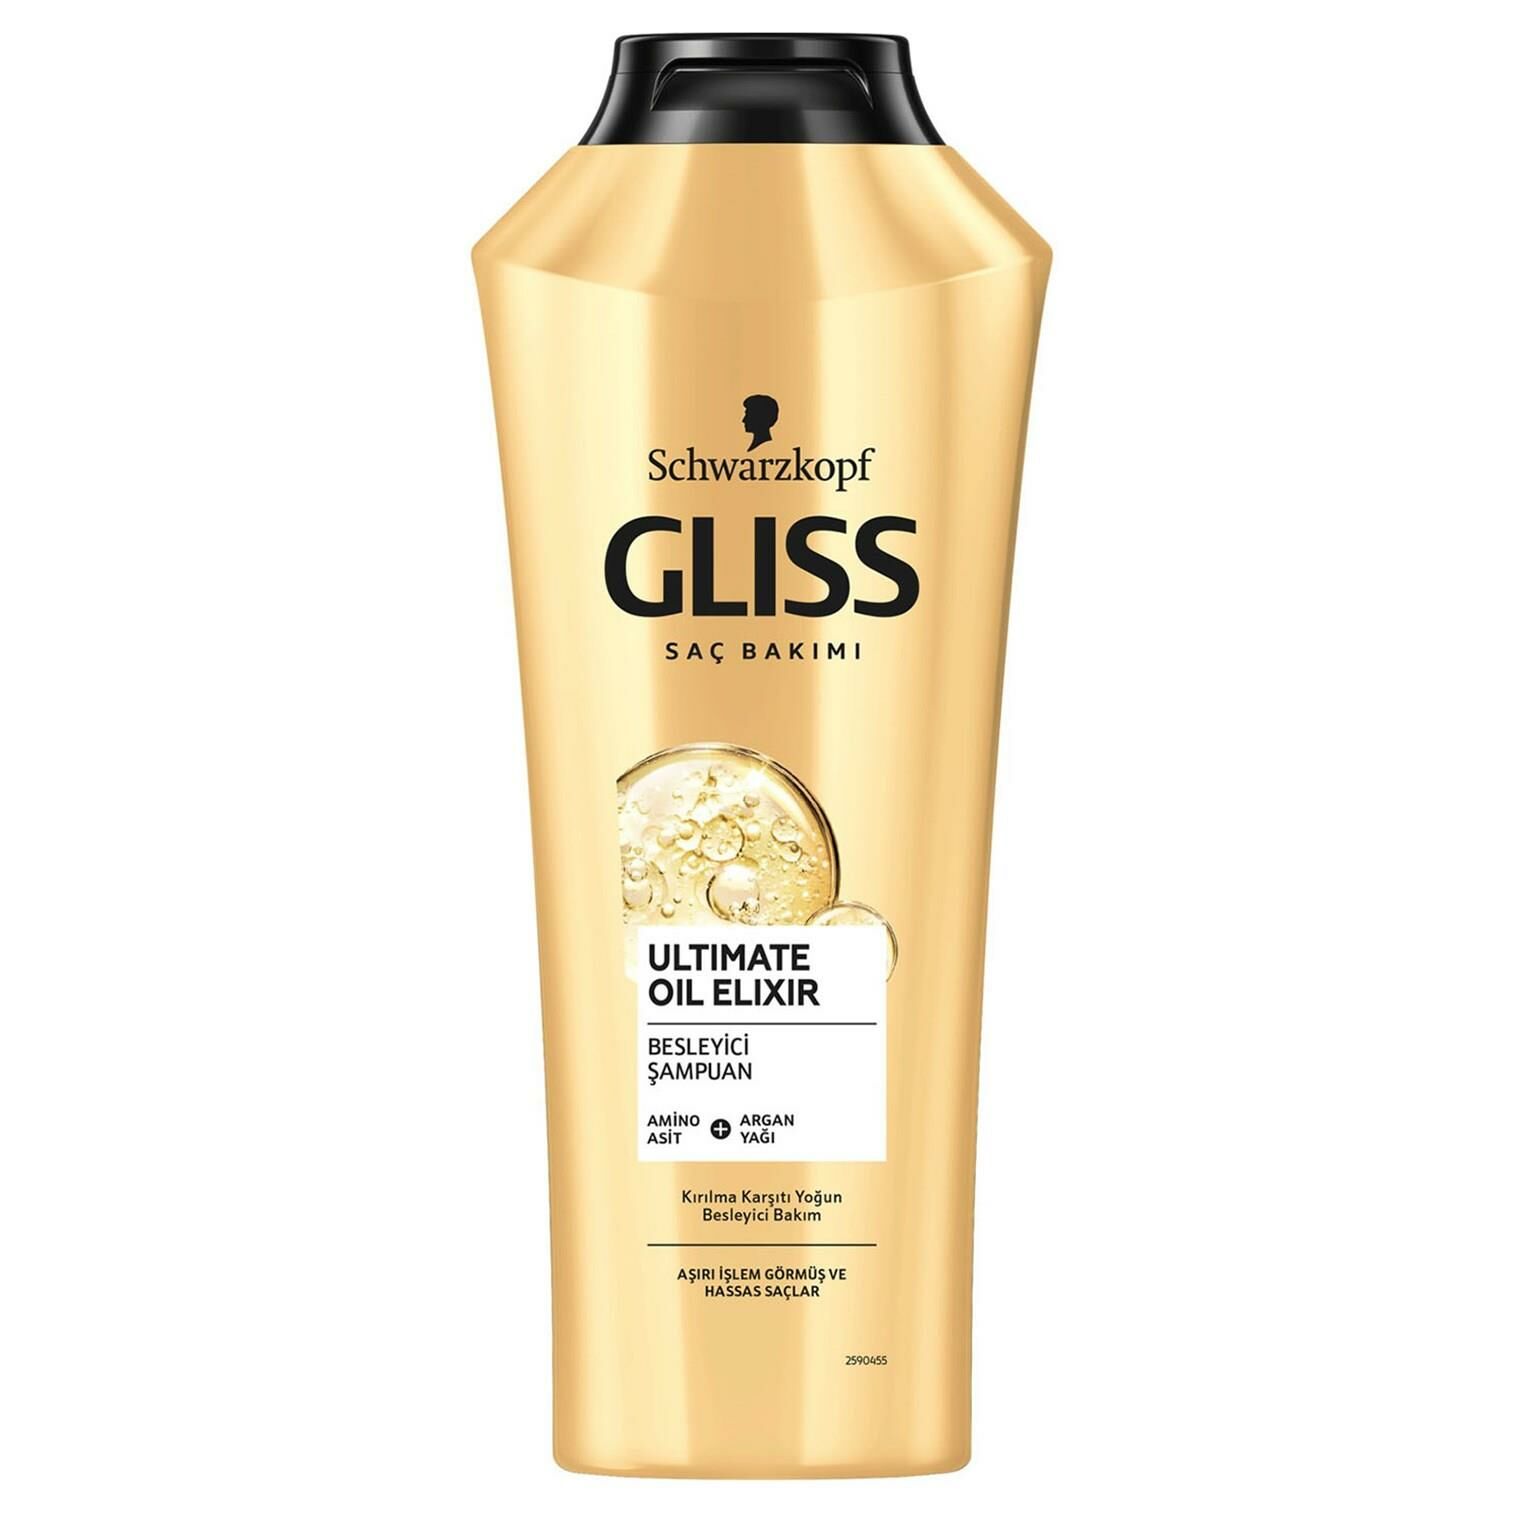 Gliss Ultimate Oil Elixir Şampuan 360 ml